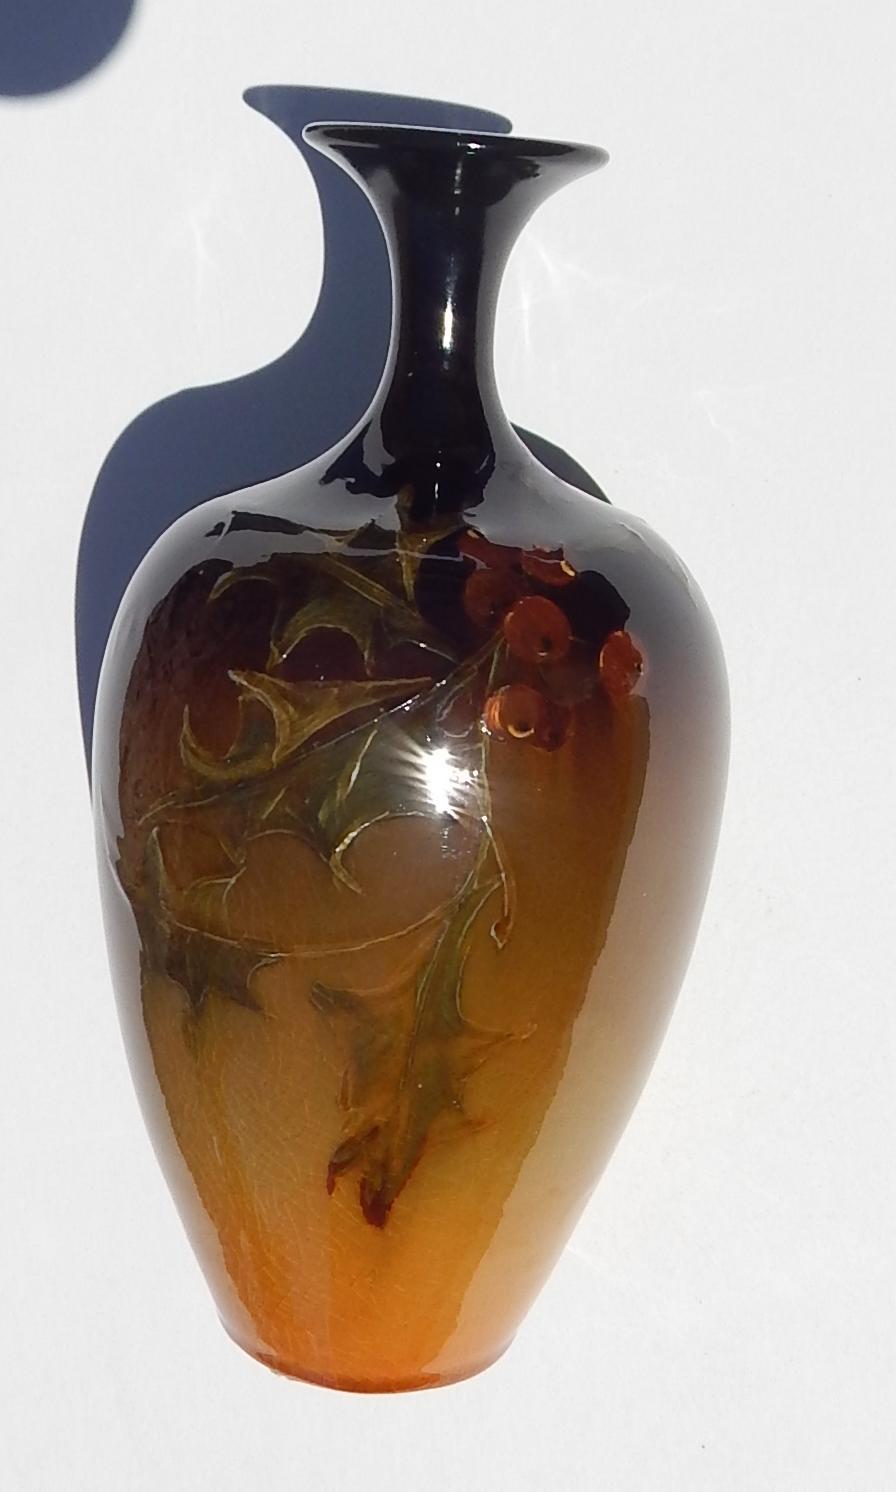 Vase en céramique Weller Louwelsa à glaçure standard en parfait état.
Marqué : Weller et Louwelsa. Décoré de feuilles de houx et de baies.
Mesures : 8